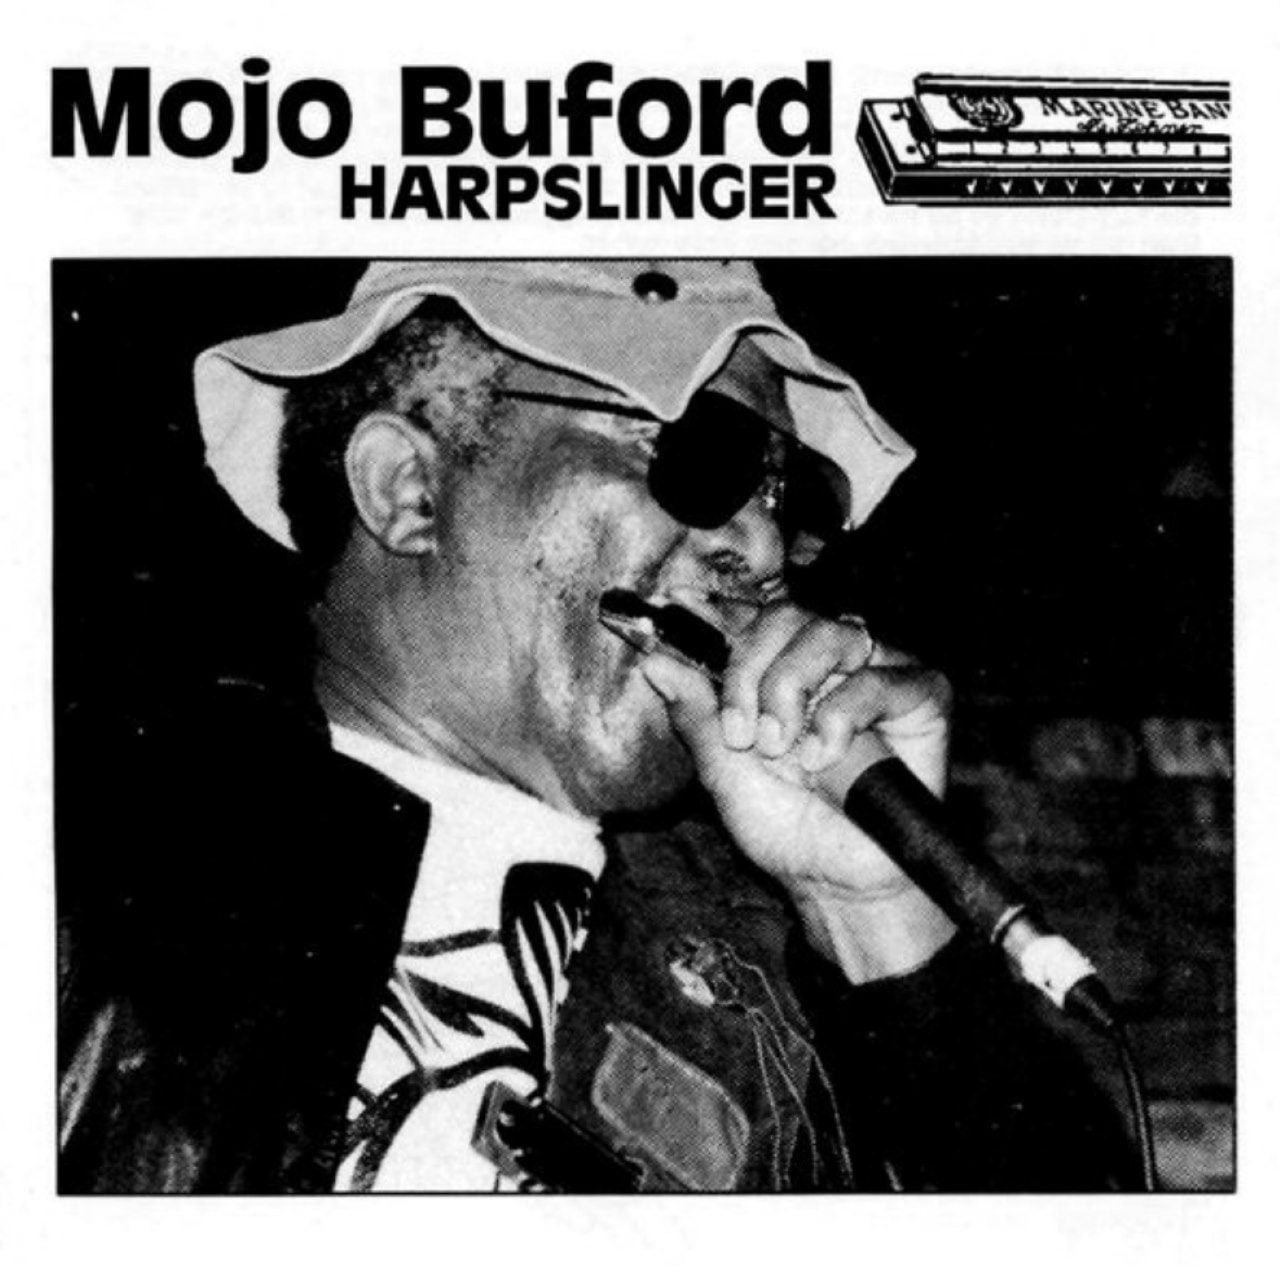 Mojo Buford – Harpslinger cover album